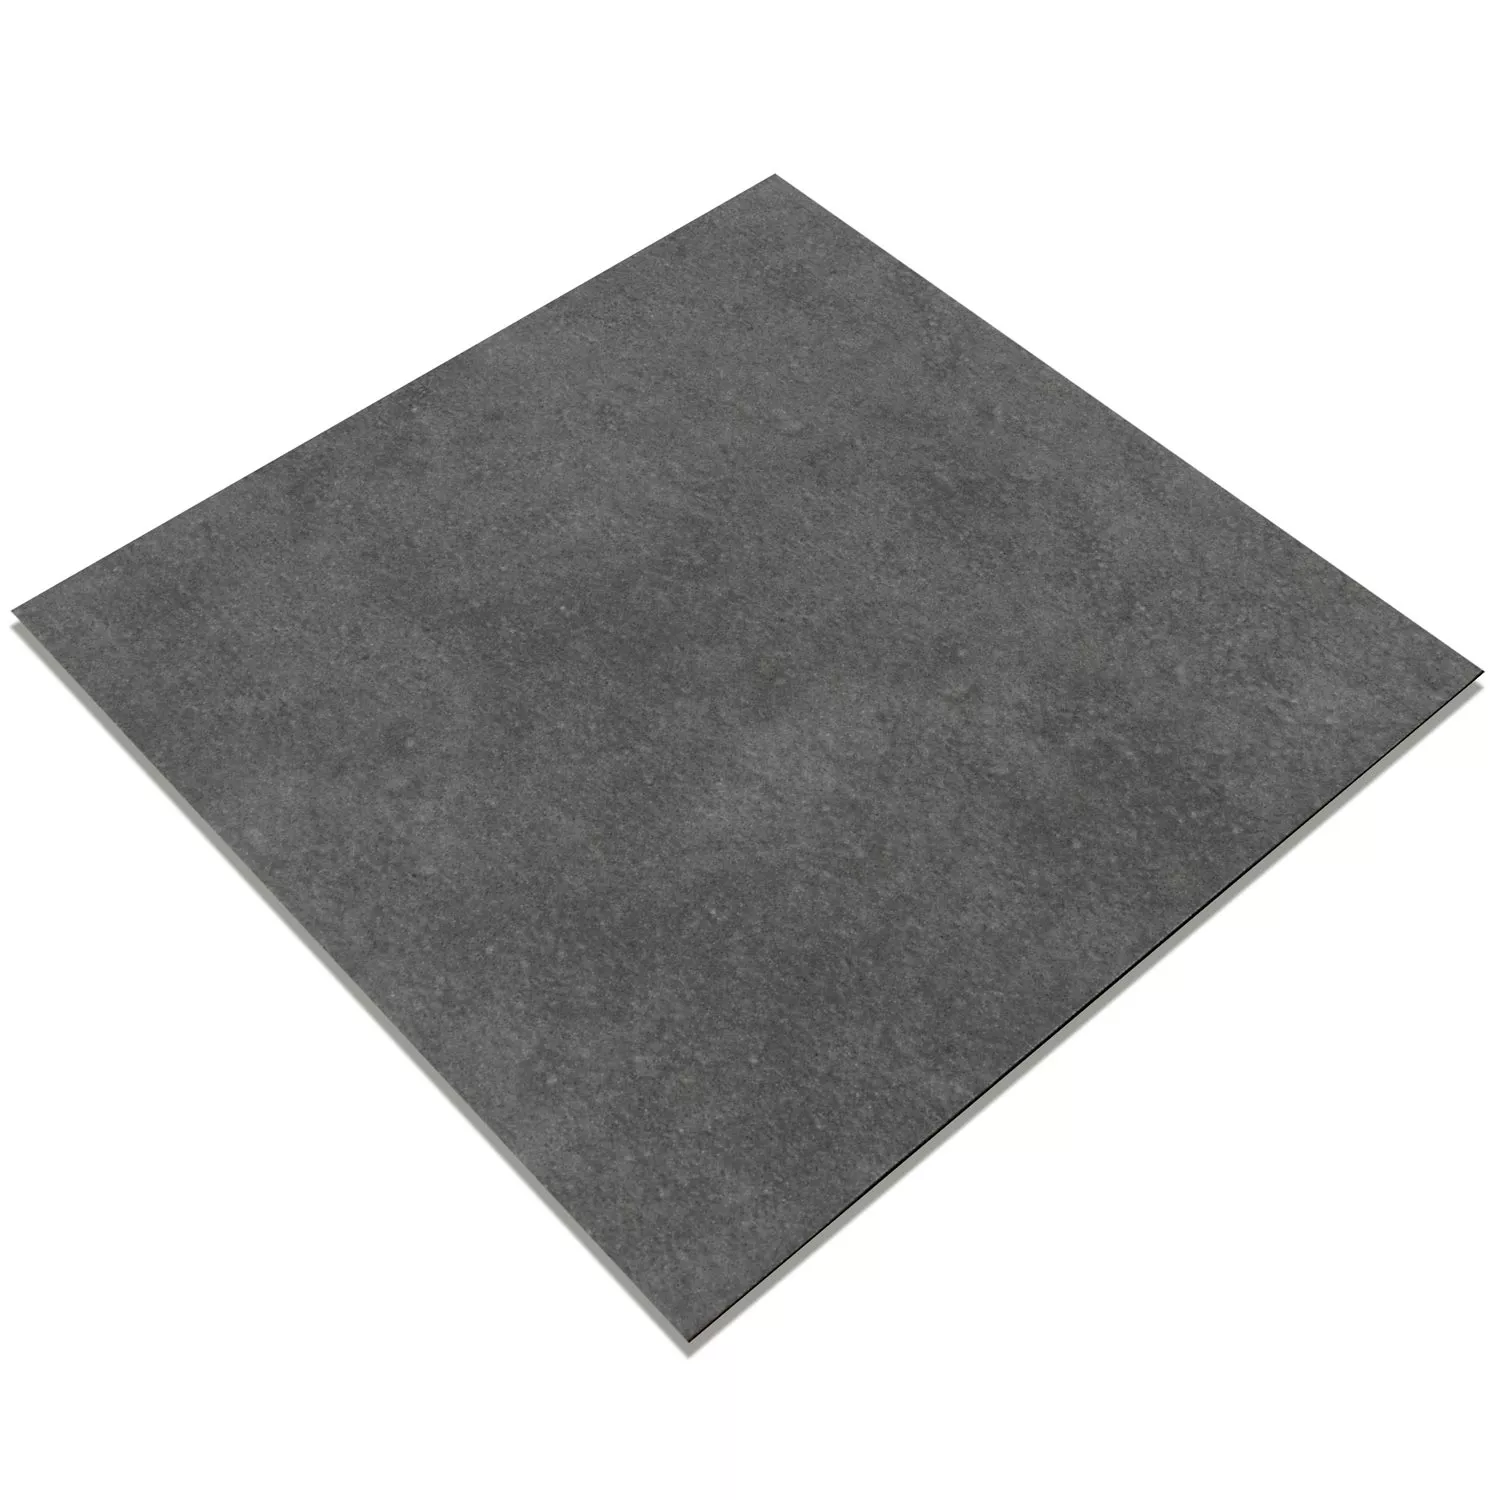 Sample Cement Tiles Optic Gotik Basic Tile Dark Grey 22,3x22,3cm